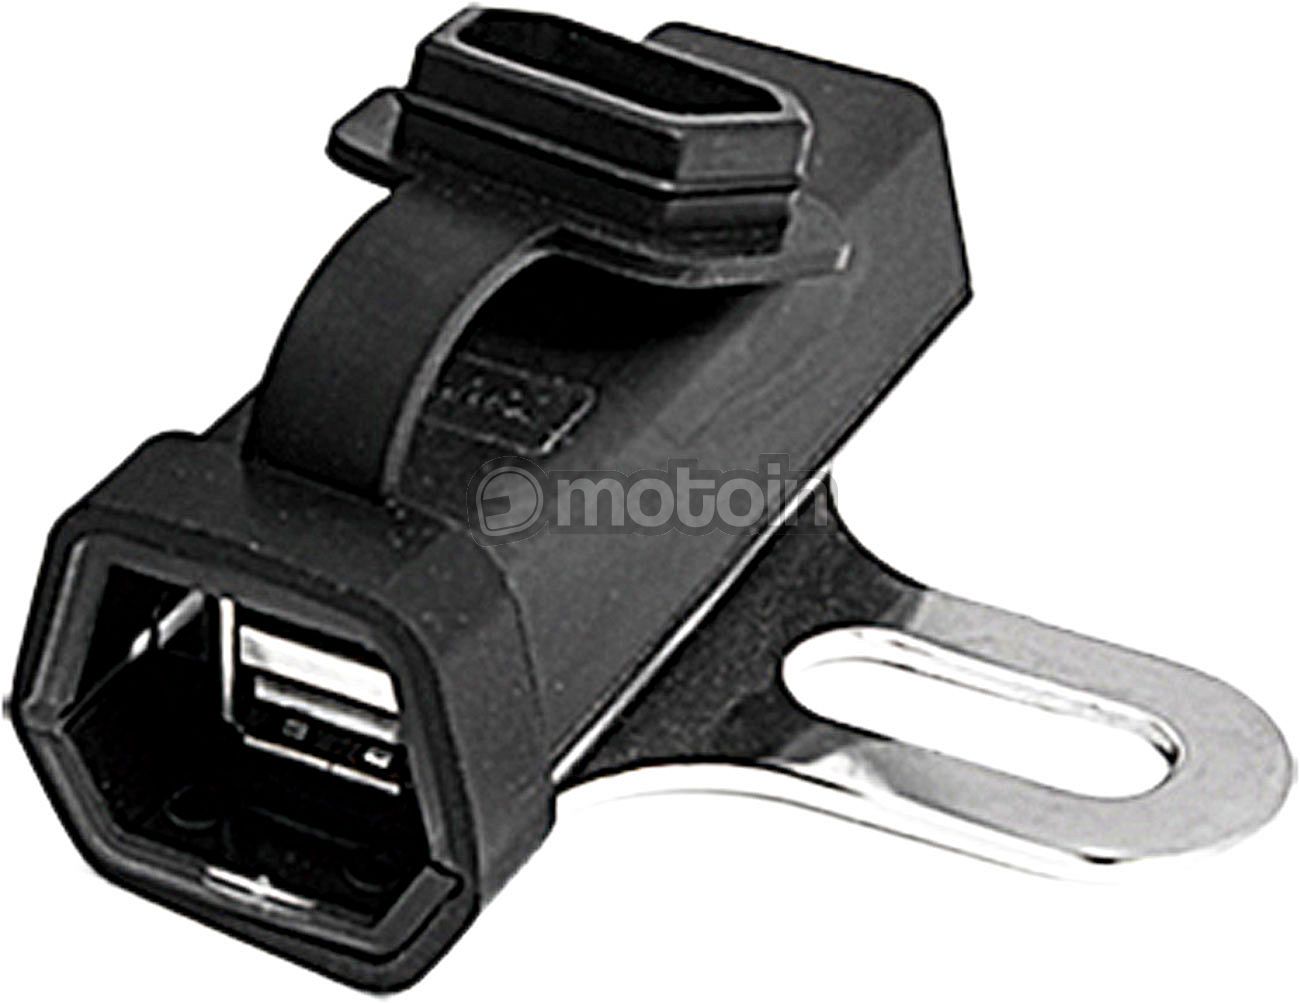 Booster 180-3024, podwójne gniazdo USB